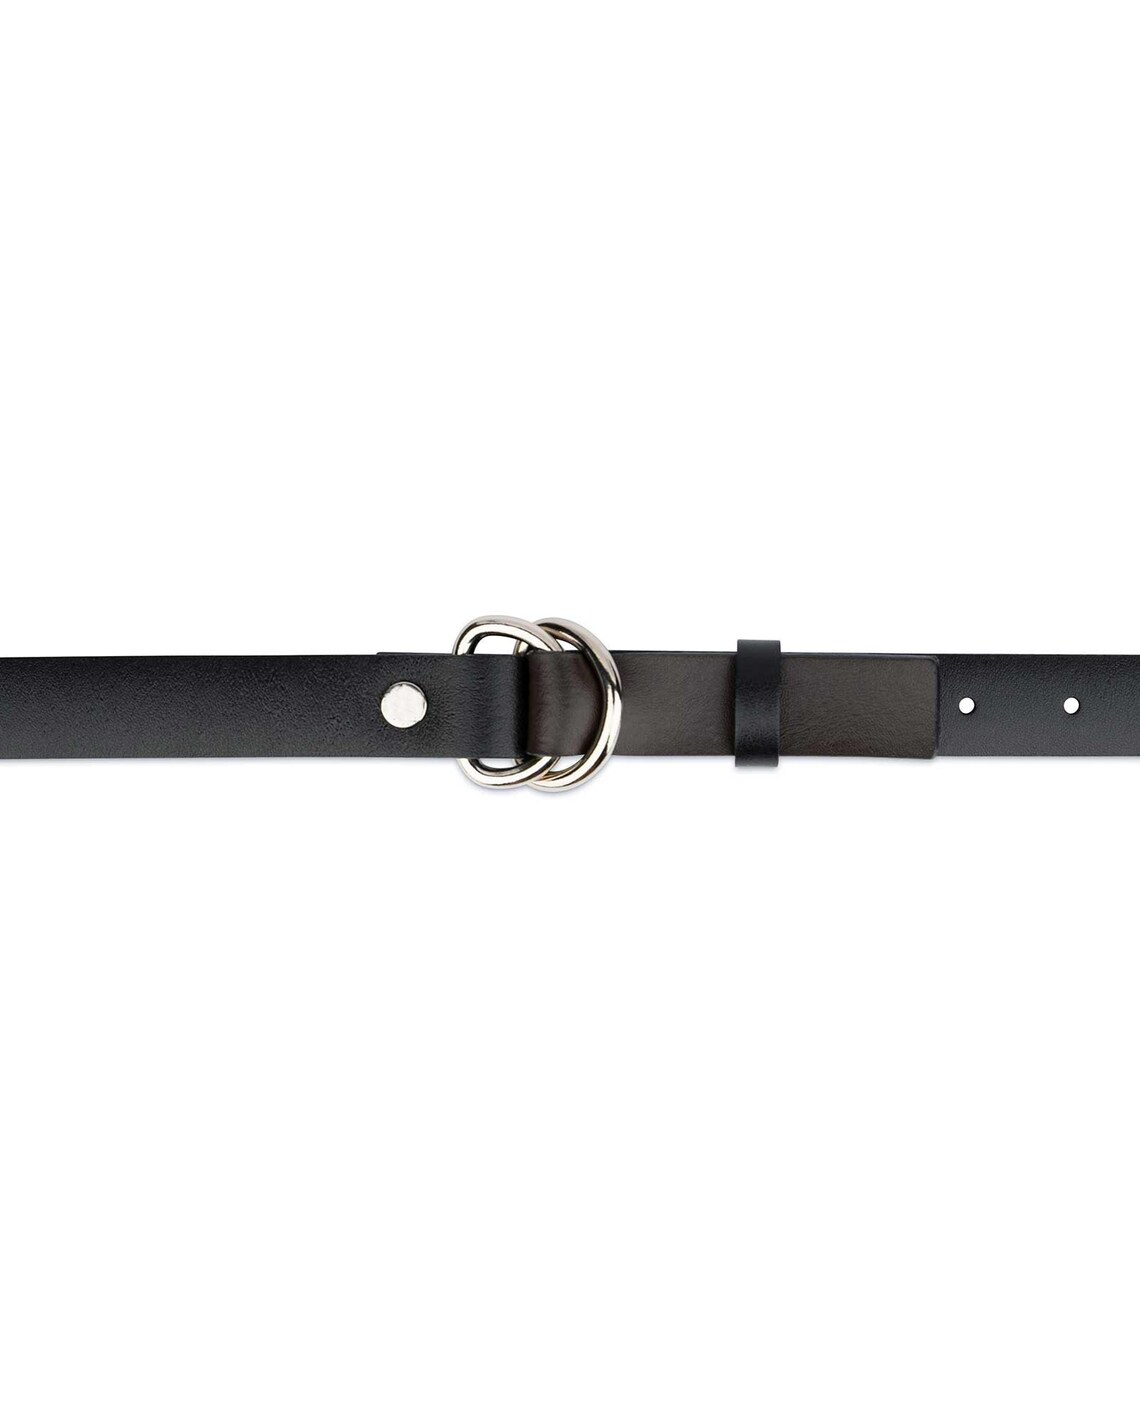 Buy Black Leather D Ring Belt | LeatherBeltsOnline.com